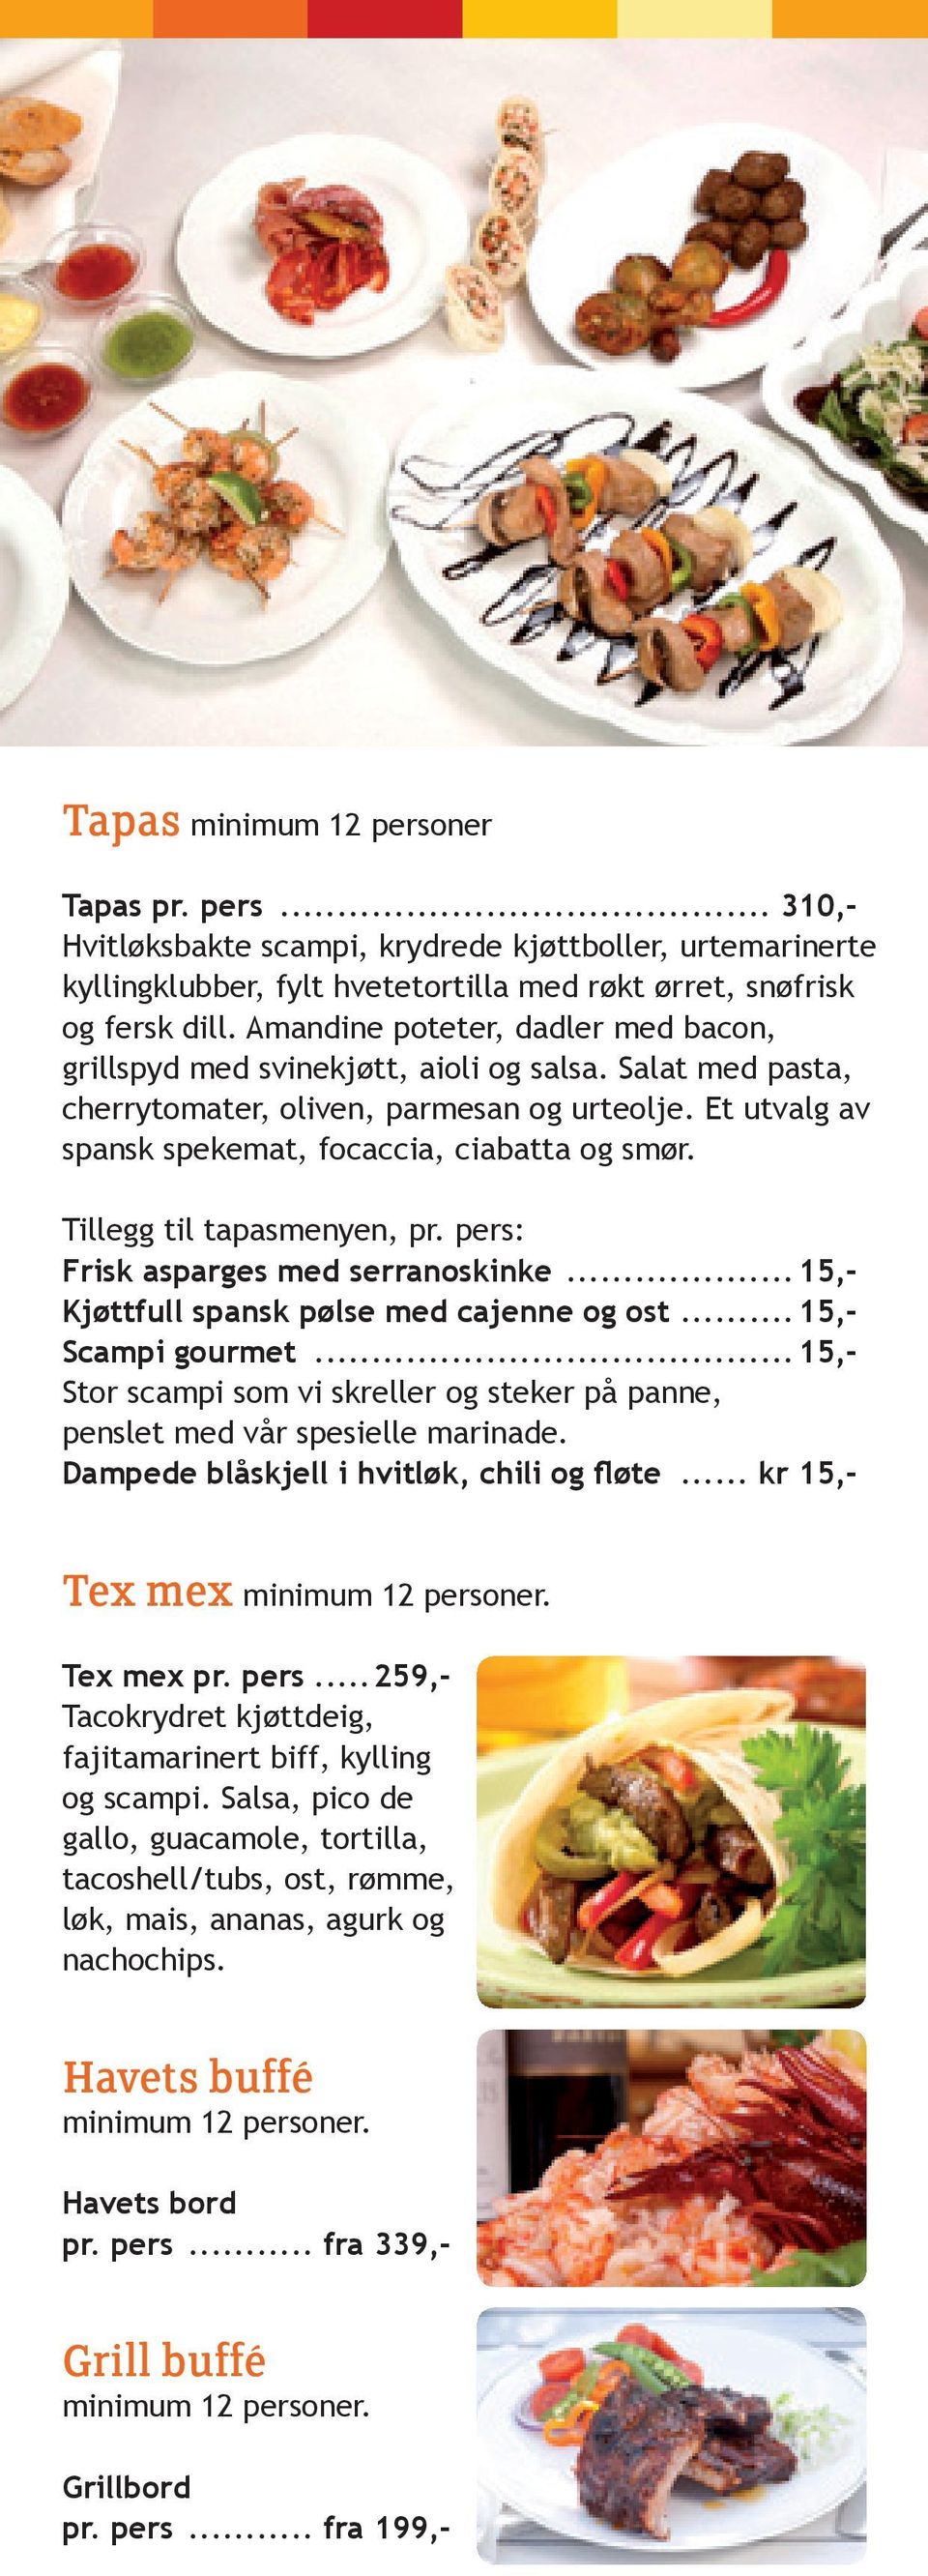 Tillegg til tapasmenyen, pr. pers: Frisk asparges med serranoskinke...15,- Kjøttfull spansk pølse med cajenne og ost...15,- Scampi gourmet.